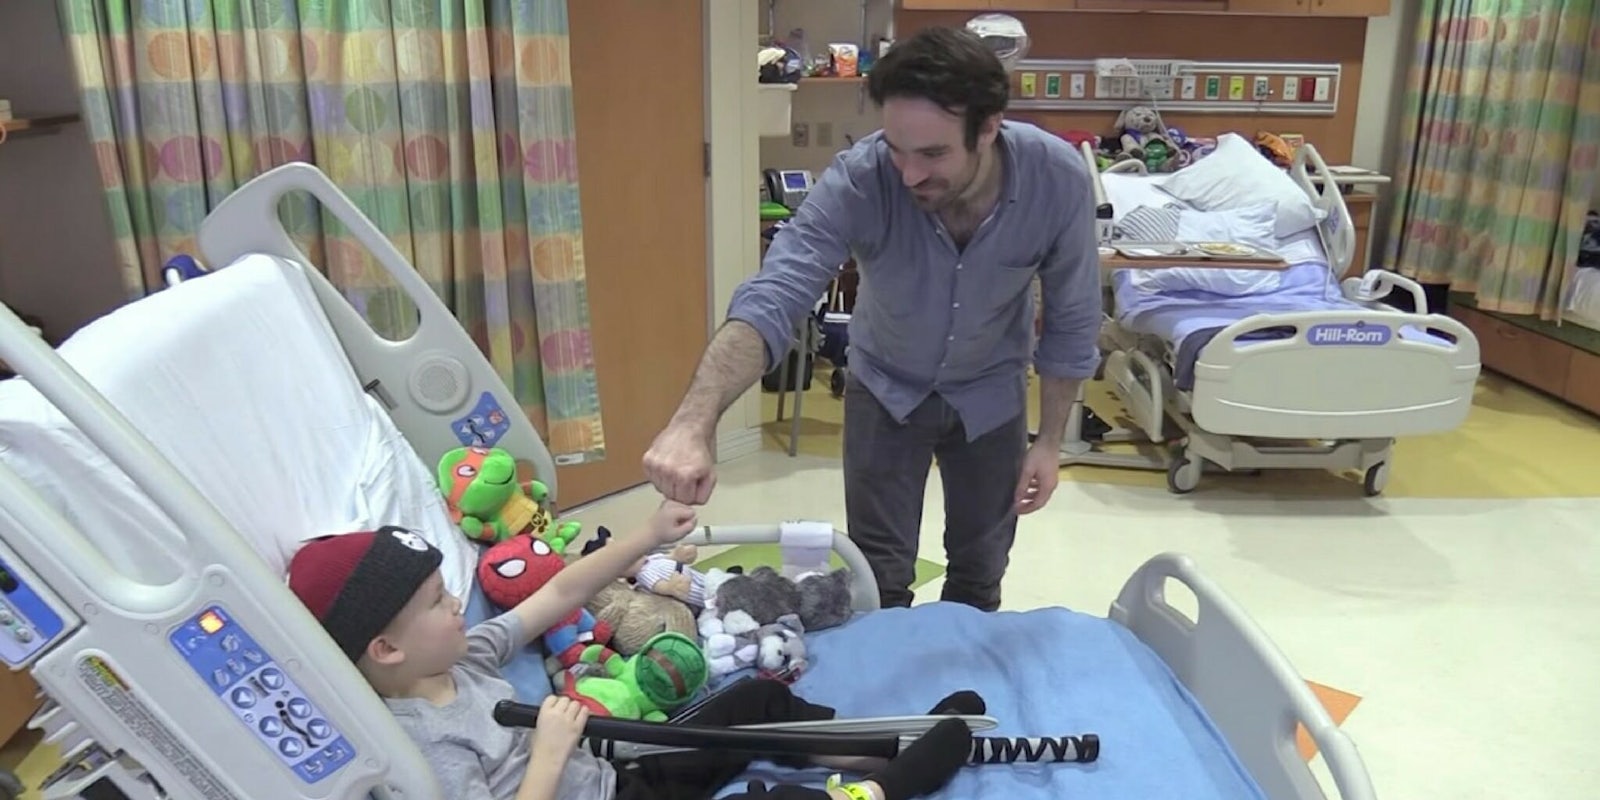 Charlie Cox visits children at Blythedale Children's Hospital